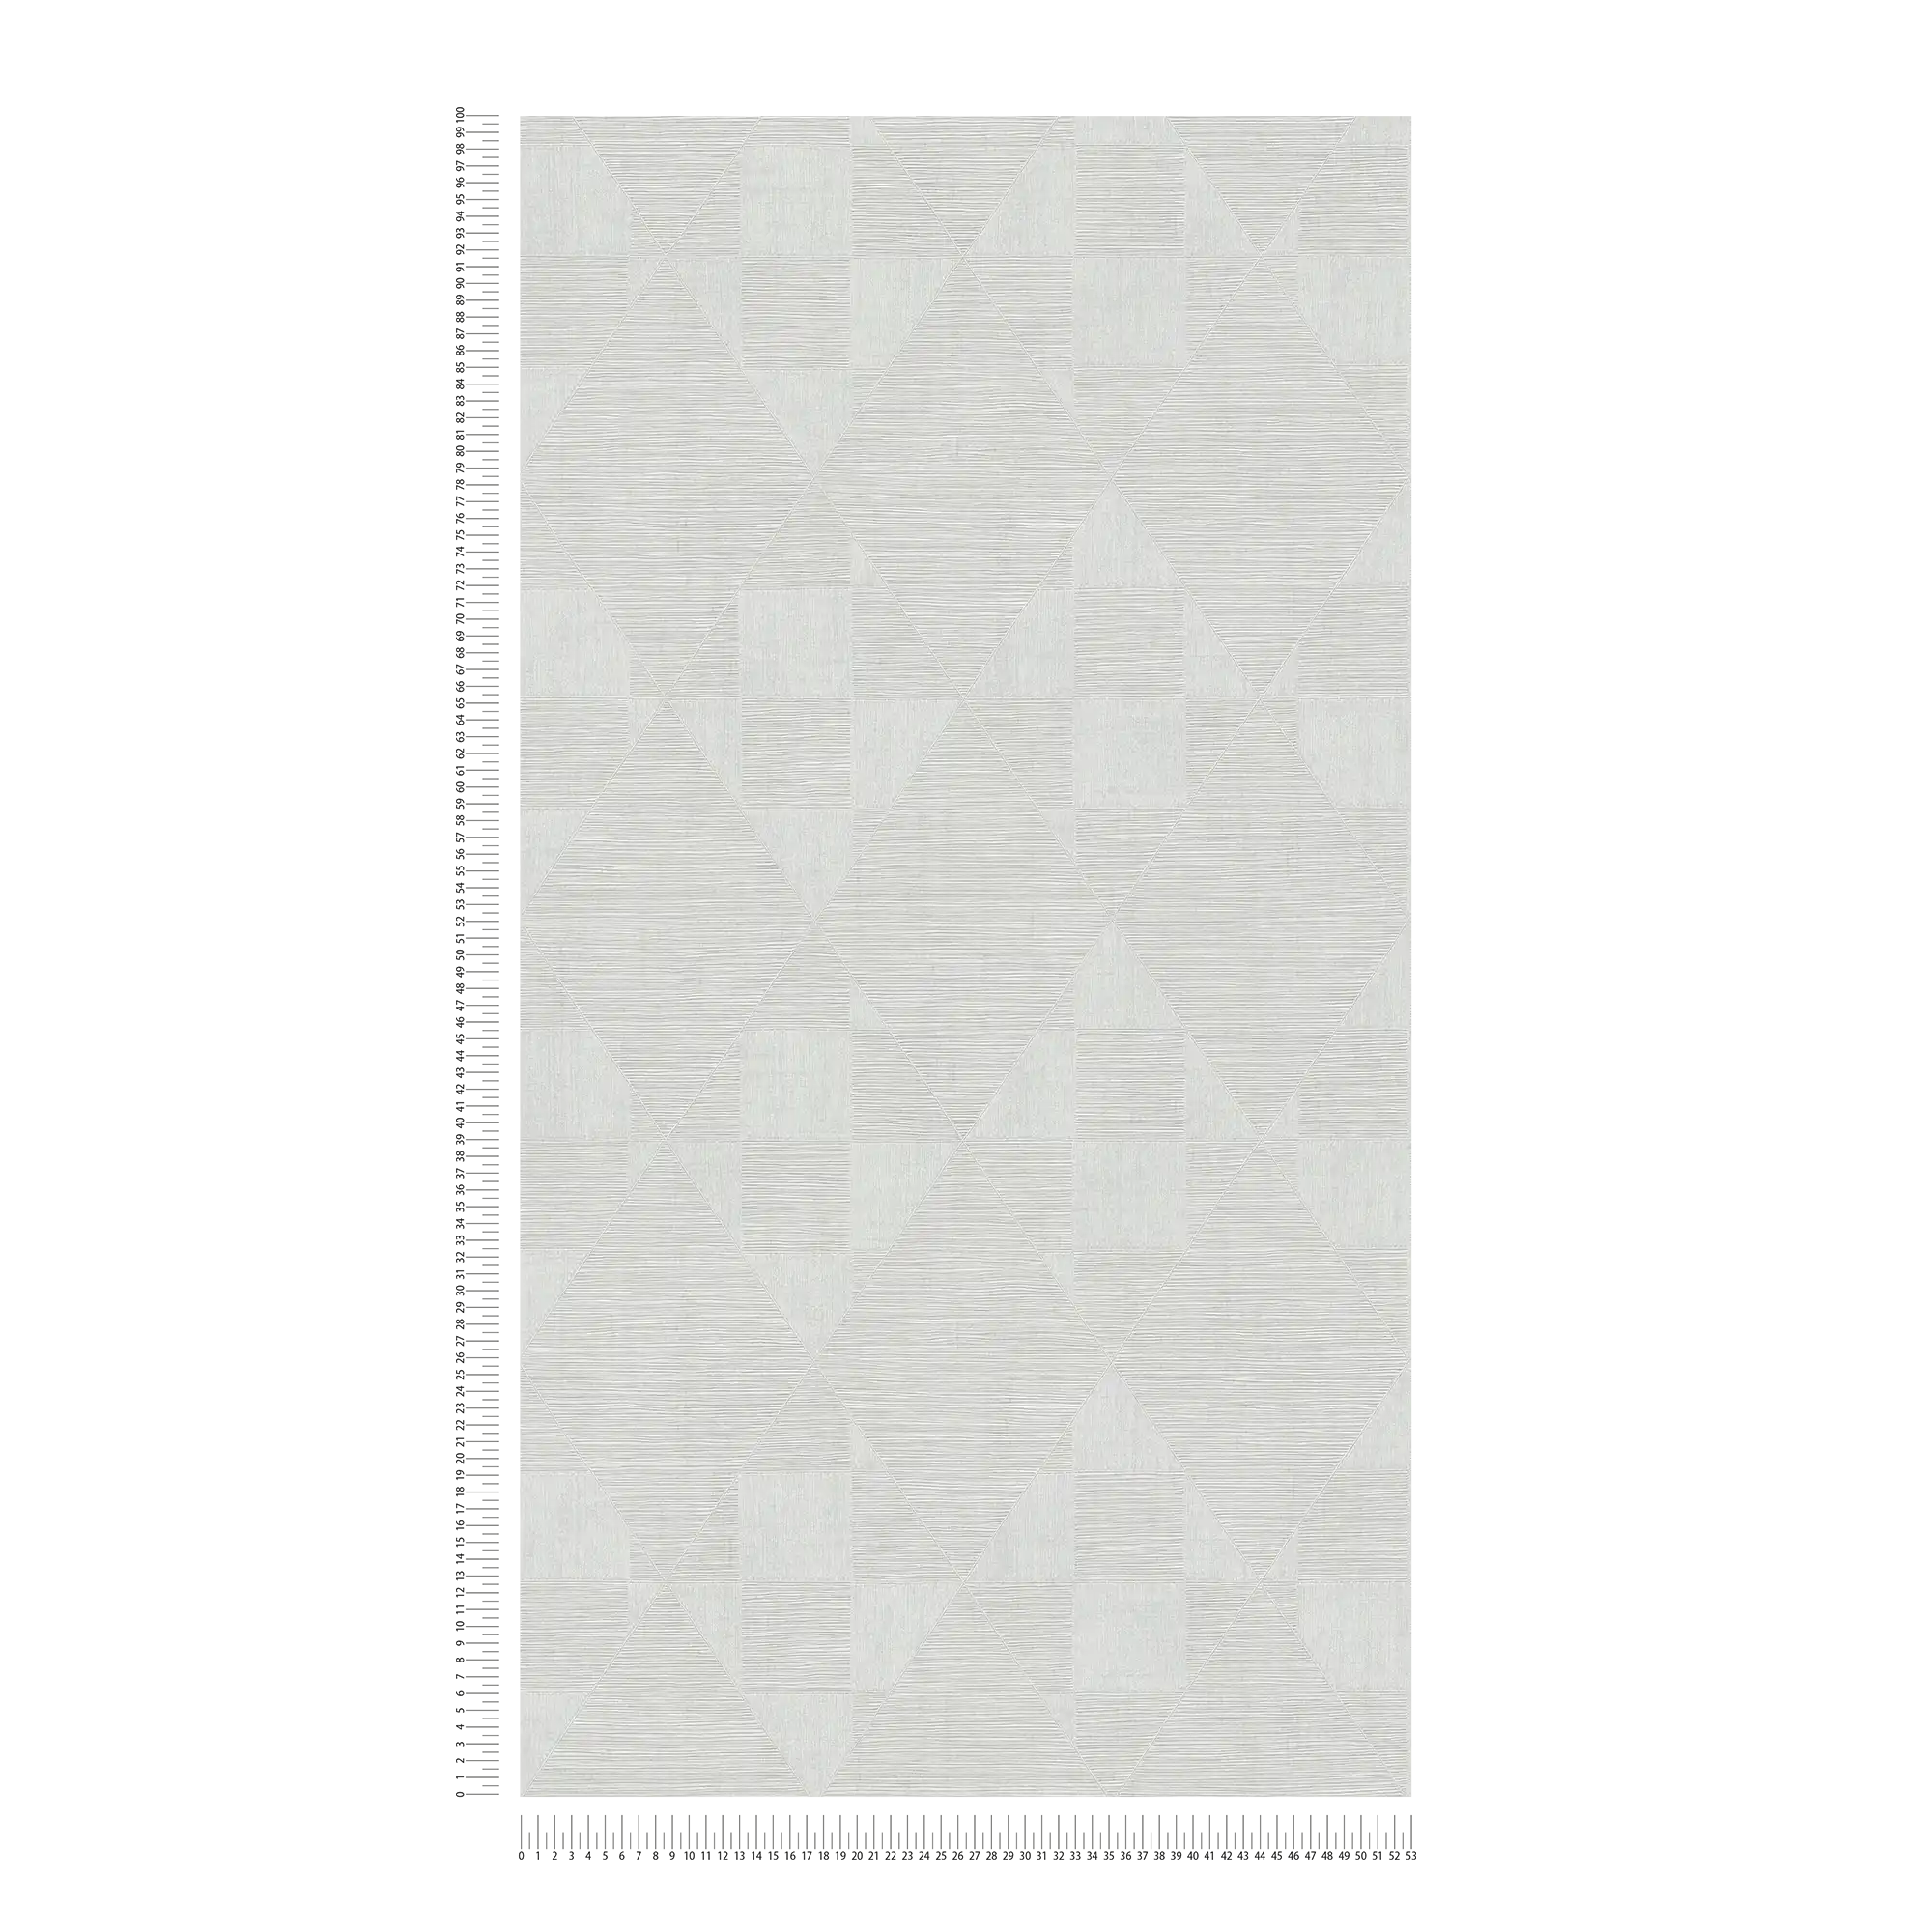             Carta da parati retrò con struttura metallica - grigio, bianco
        